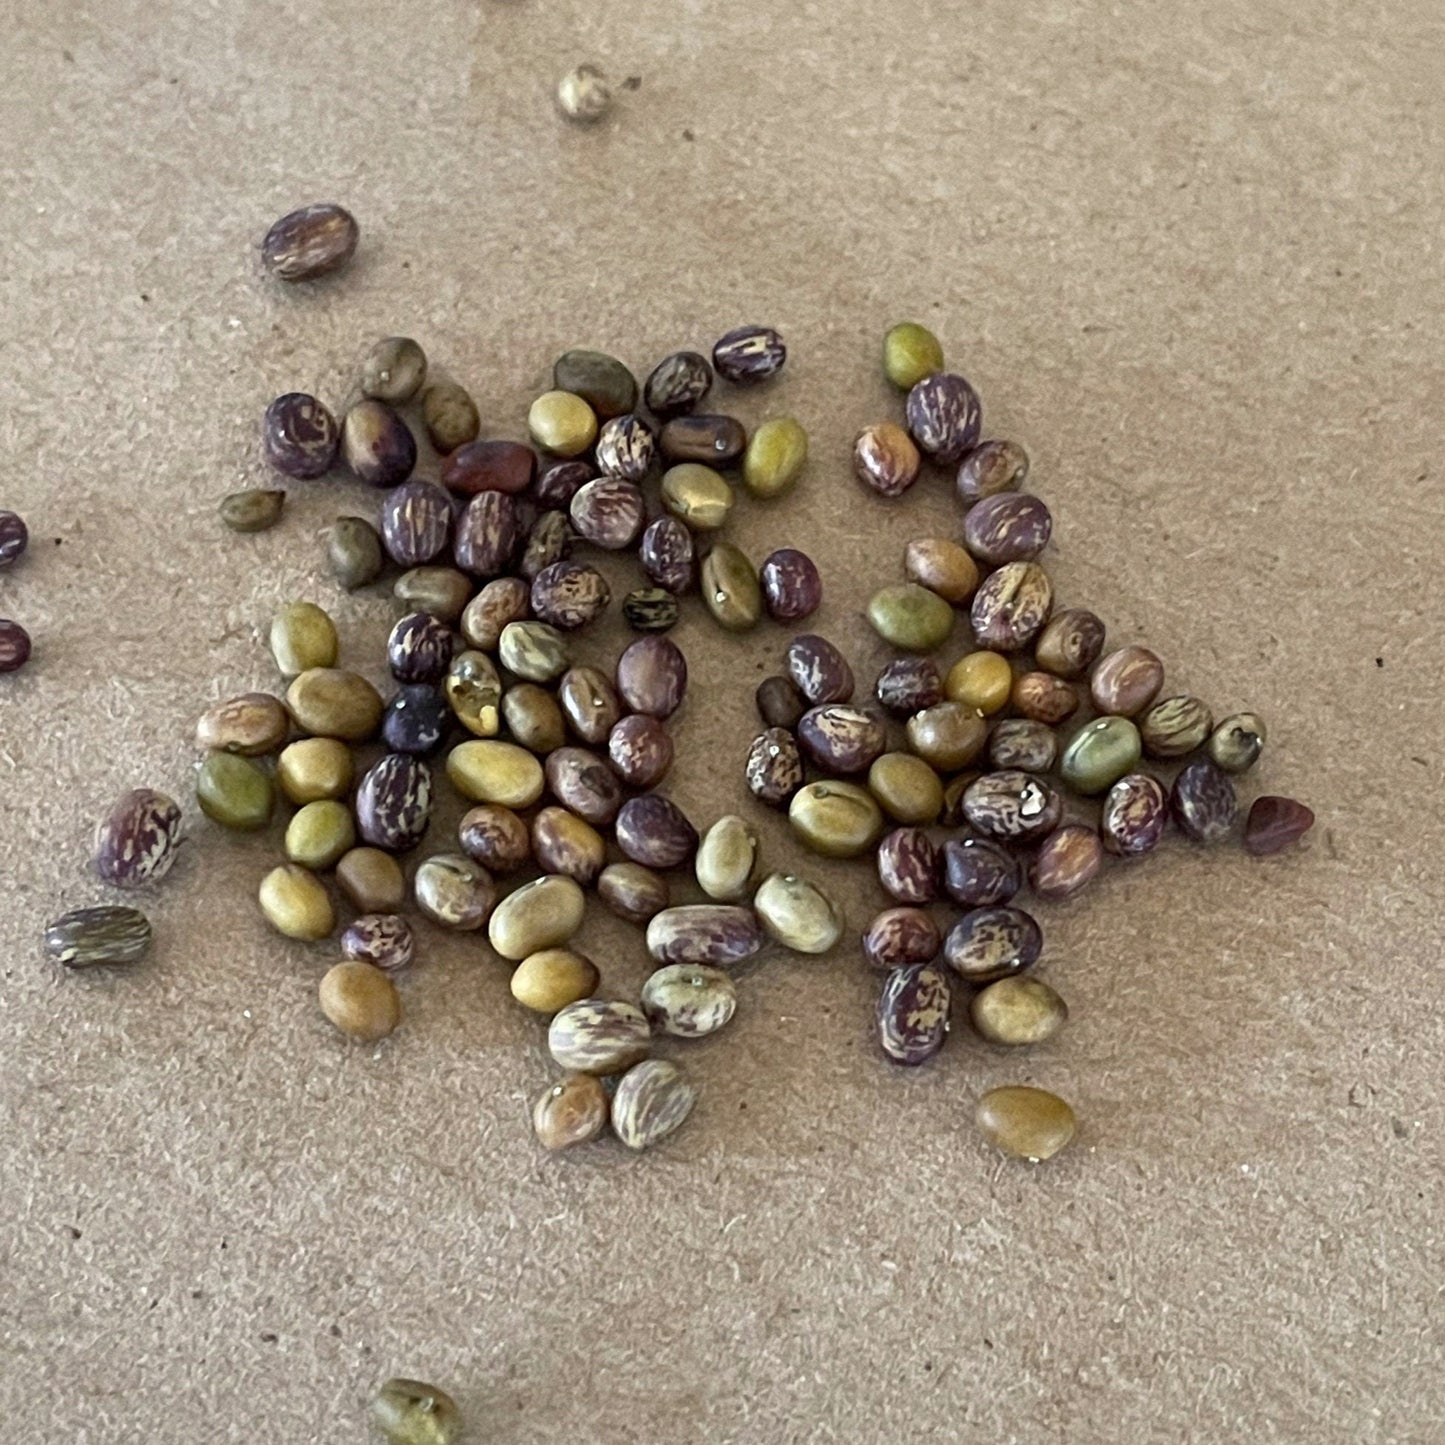 Semillas de Caragana (Caragana arborescens, Peashrub siberiano) - Más de 75 semillas